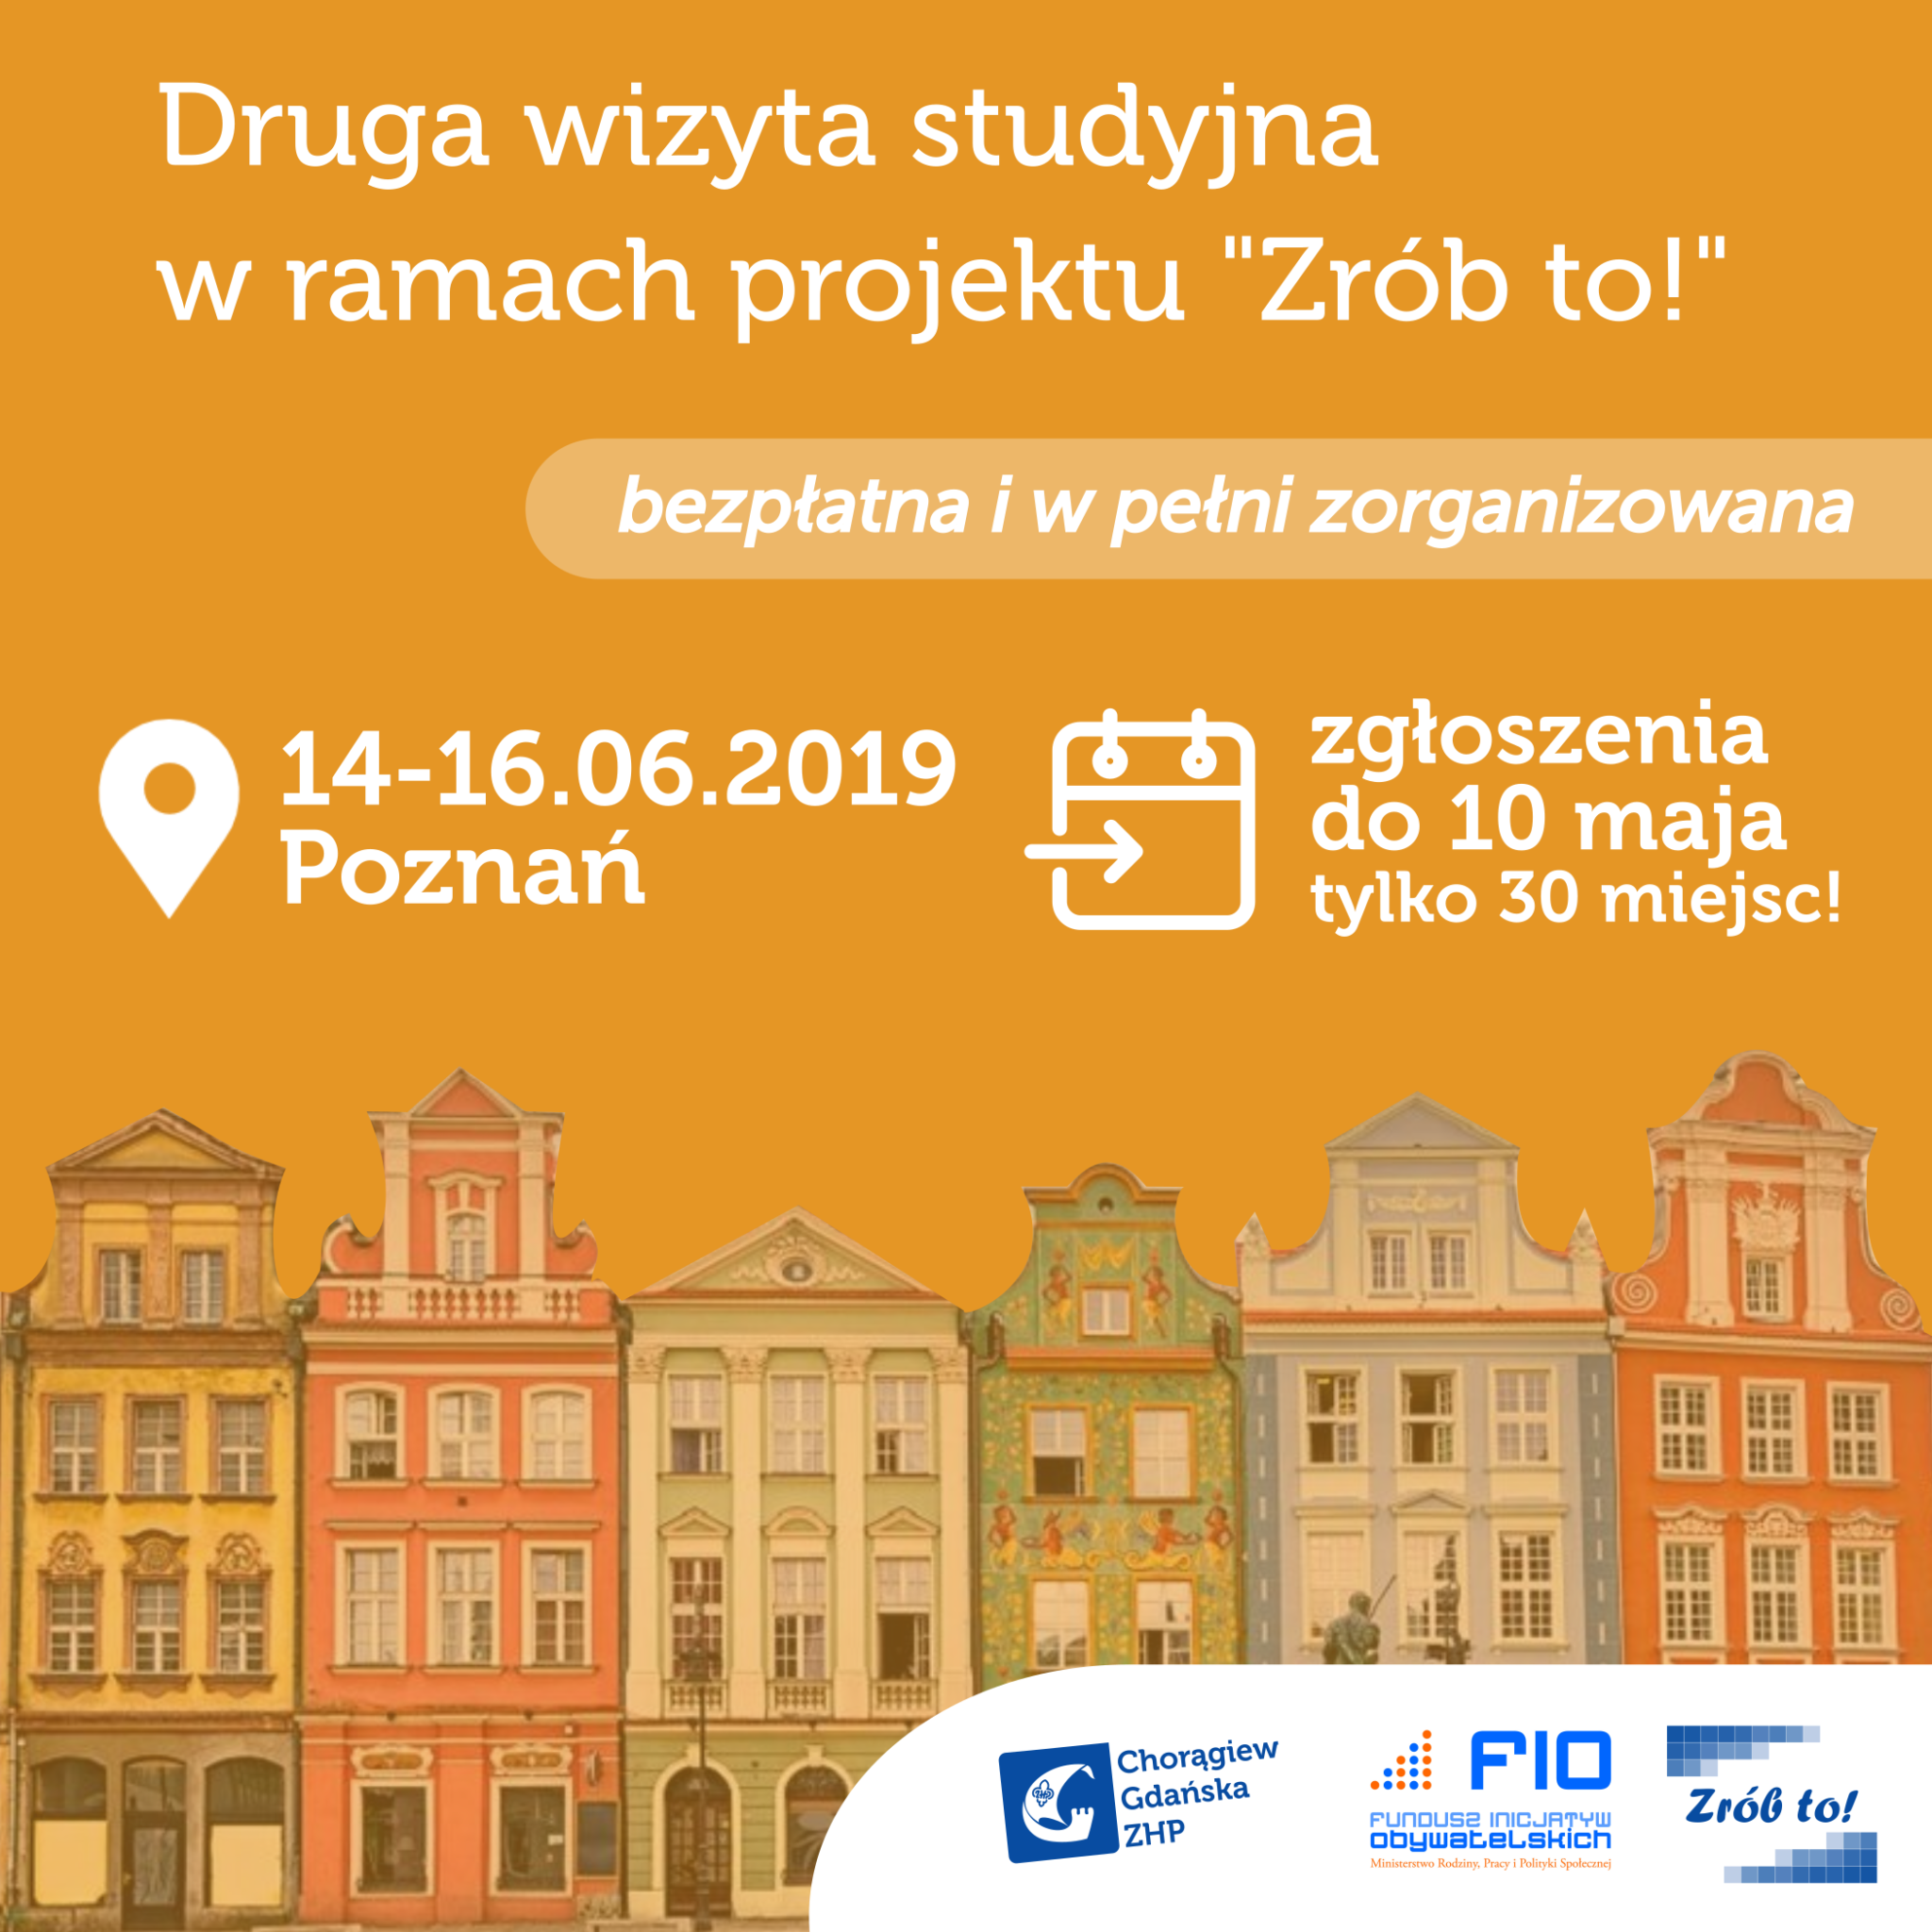 Druga wizyta studyjna, kierunek: Poznań